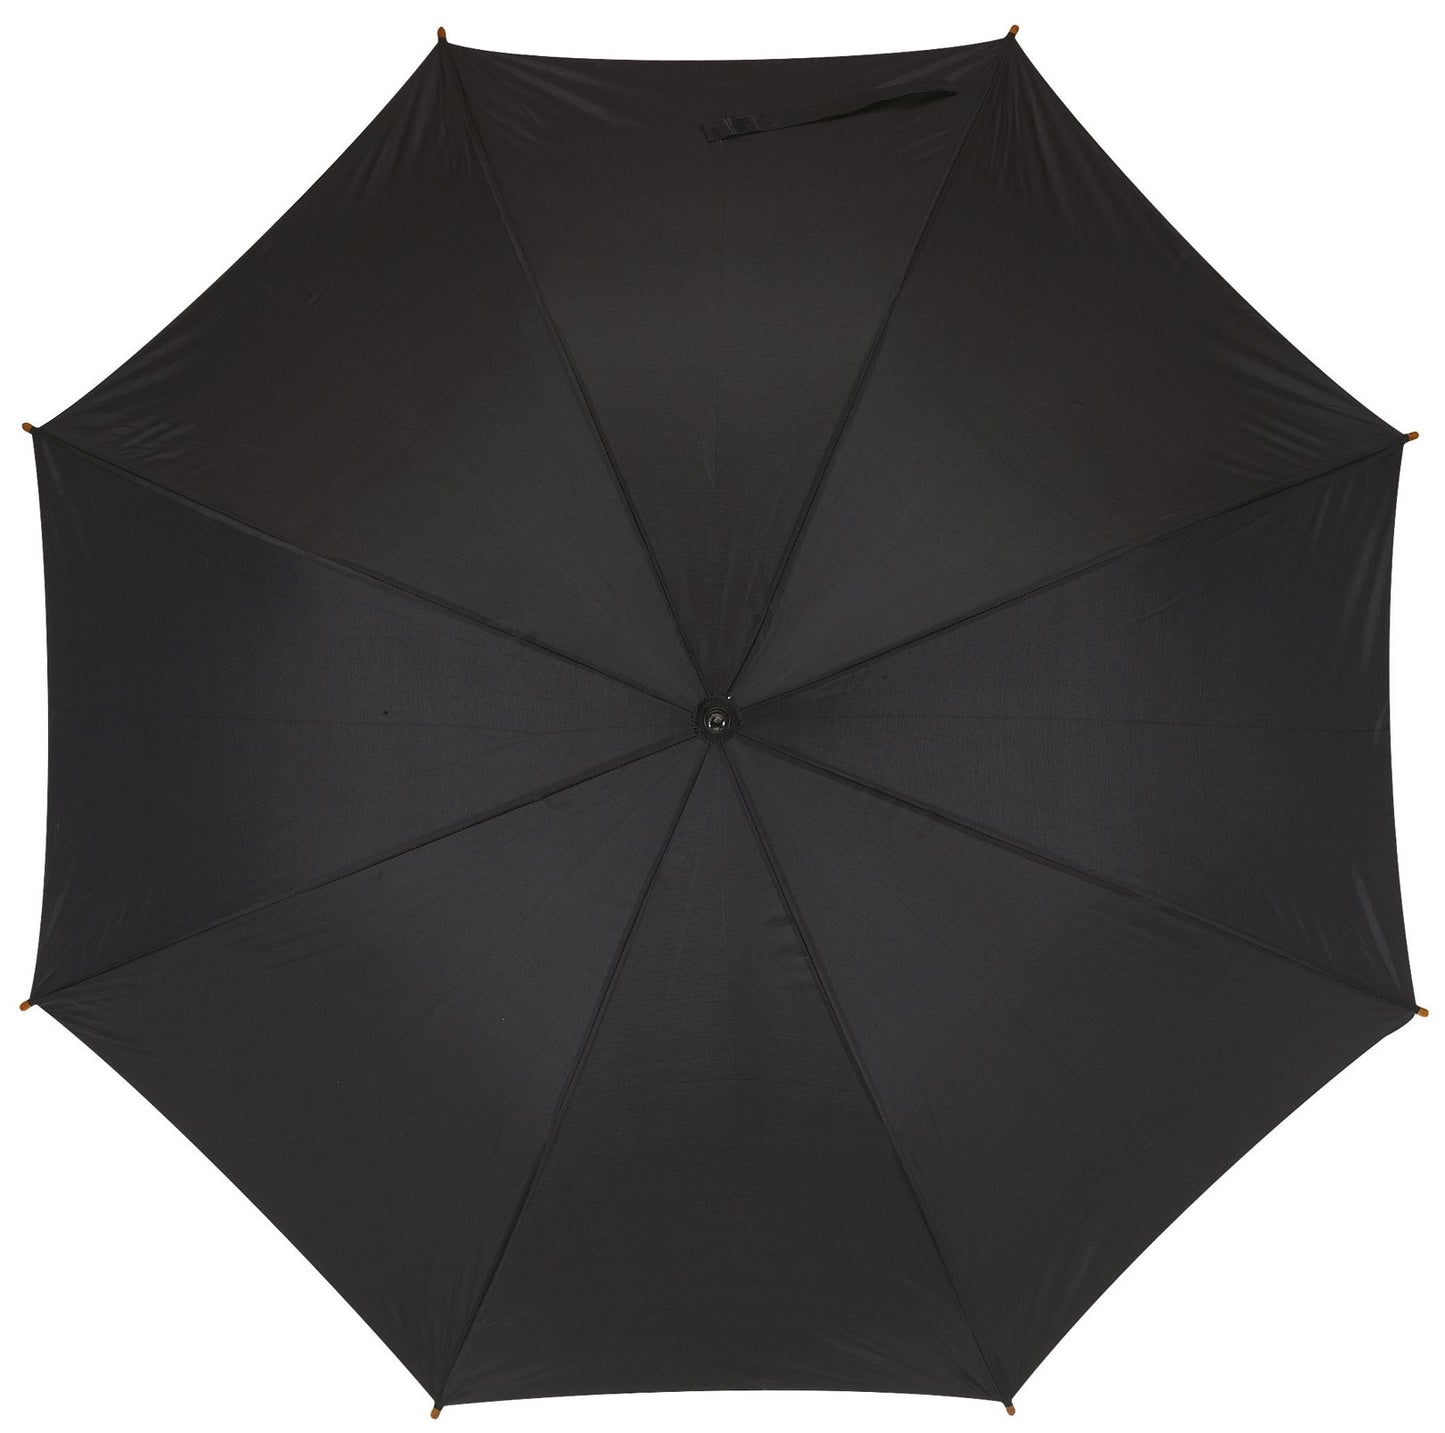 Μαύρη ομπρέλα βροχής, twinmatic, αυτόματη, μίνι.